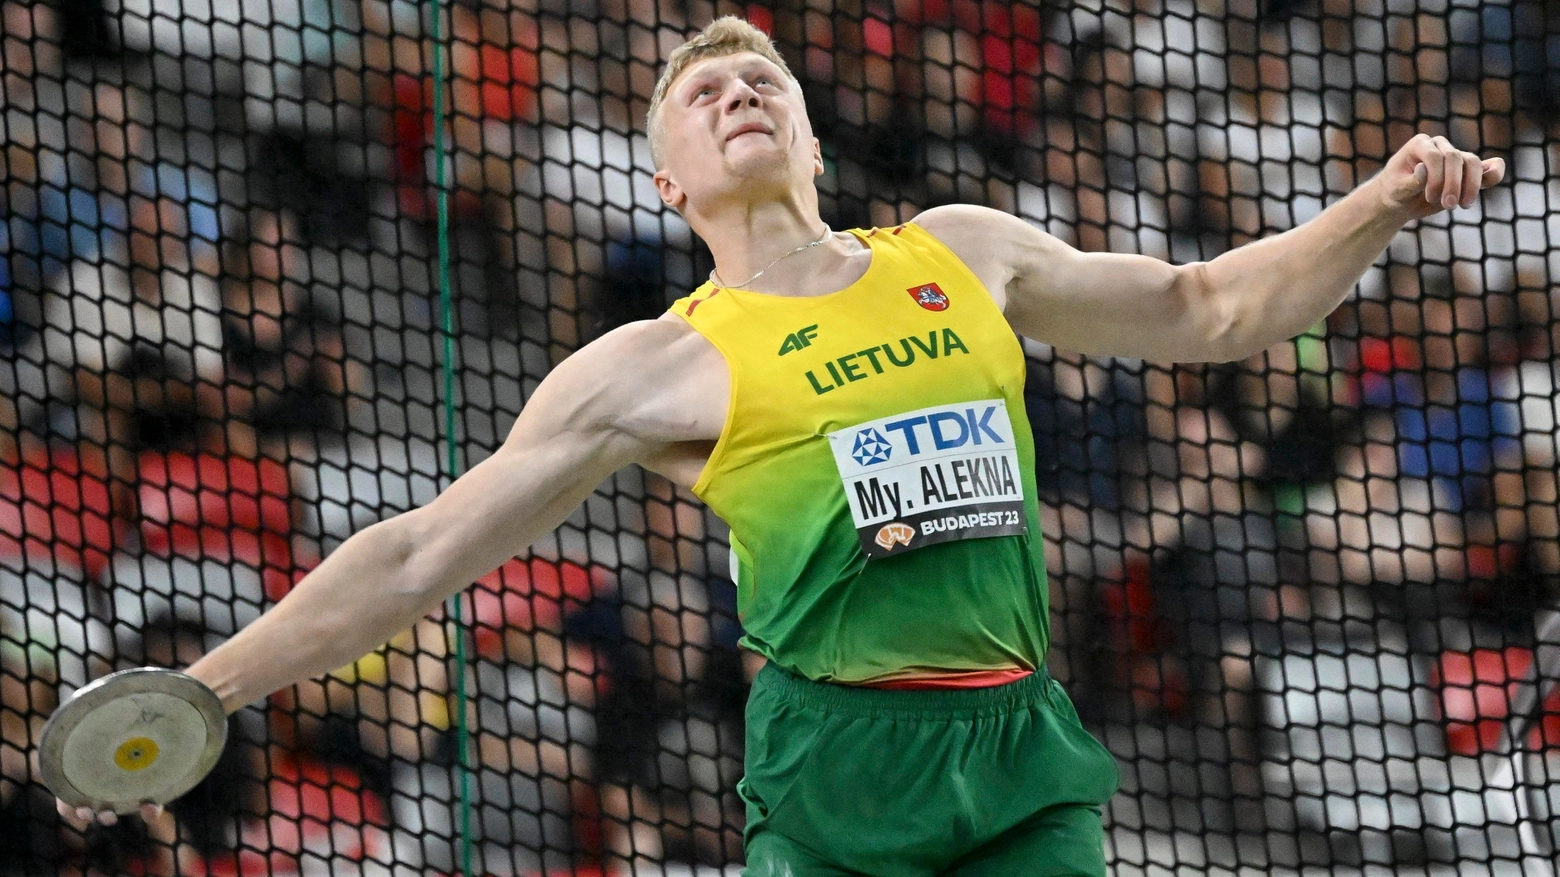 Mikolas Alekna lituano di 22 anni ha fatto segnare il nuovo record del mondo